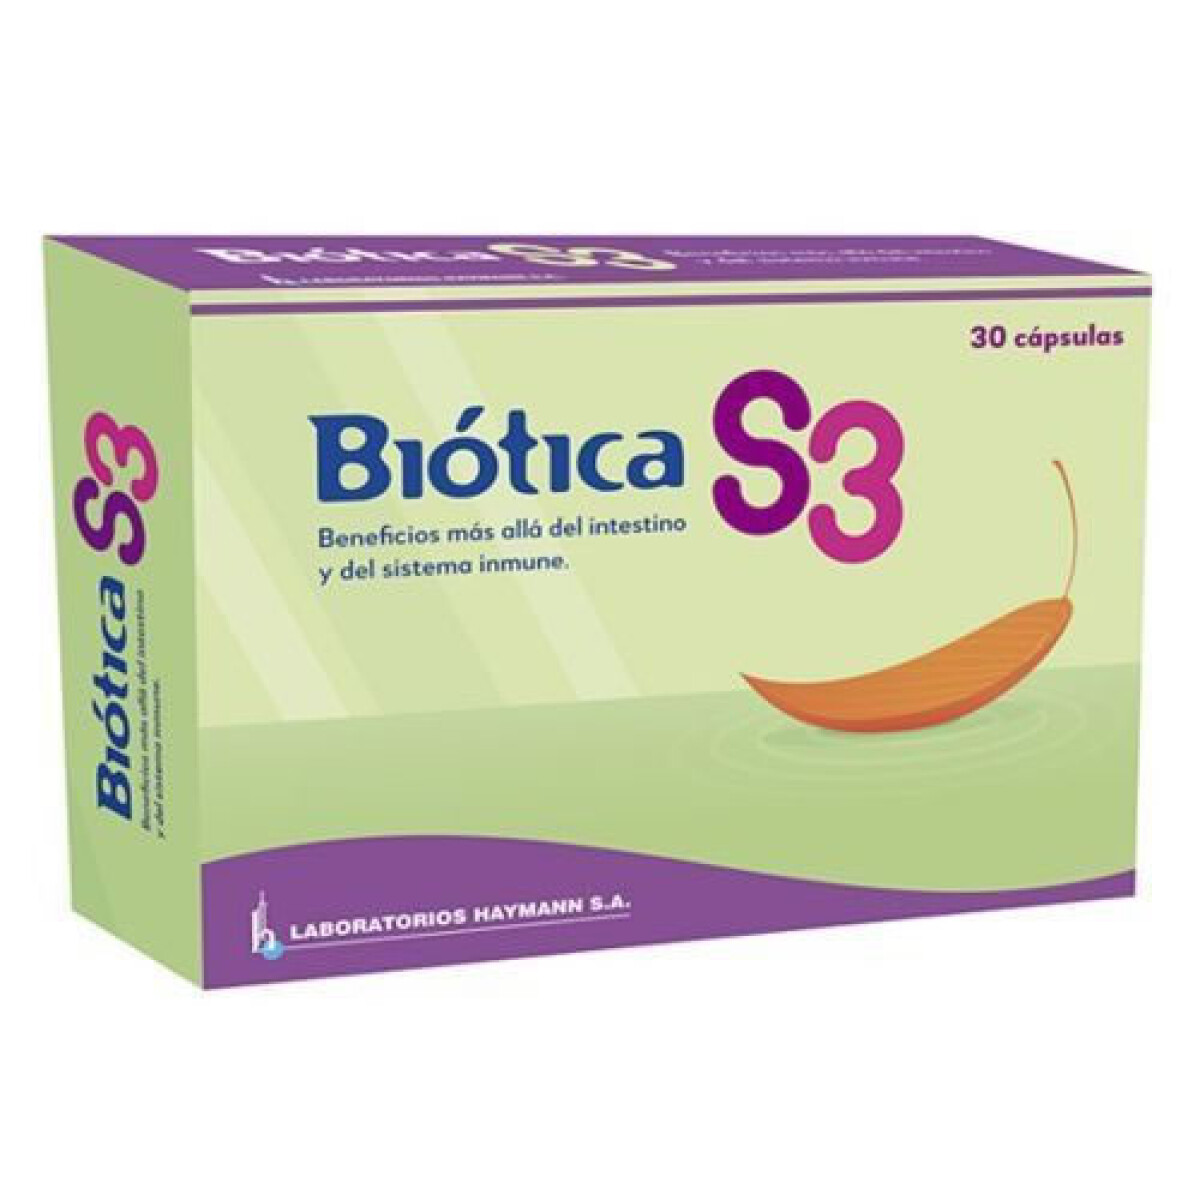 BIOTICA S3 30 CAPSULAS 